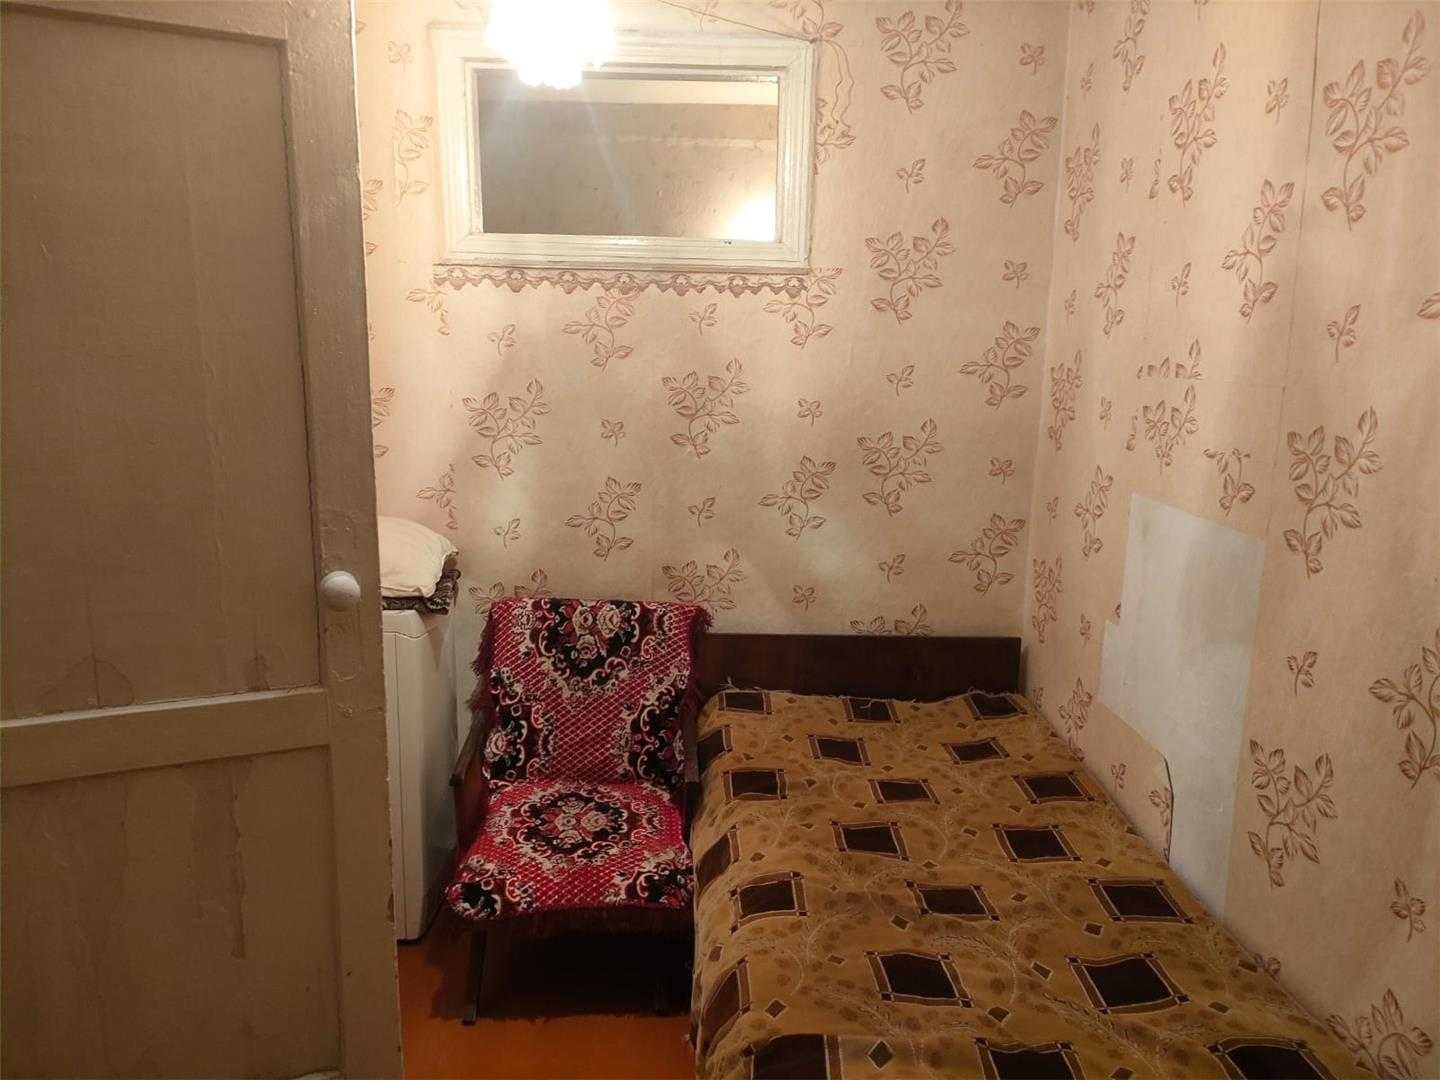 Продается 2-х  квартира в центре Сортировки. ПОМОЩЬ В ИПОТЕКЕ!